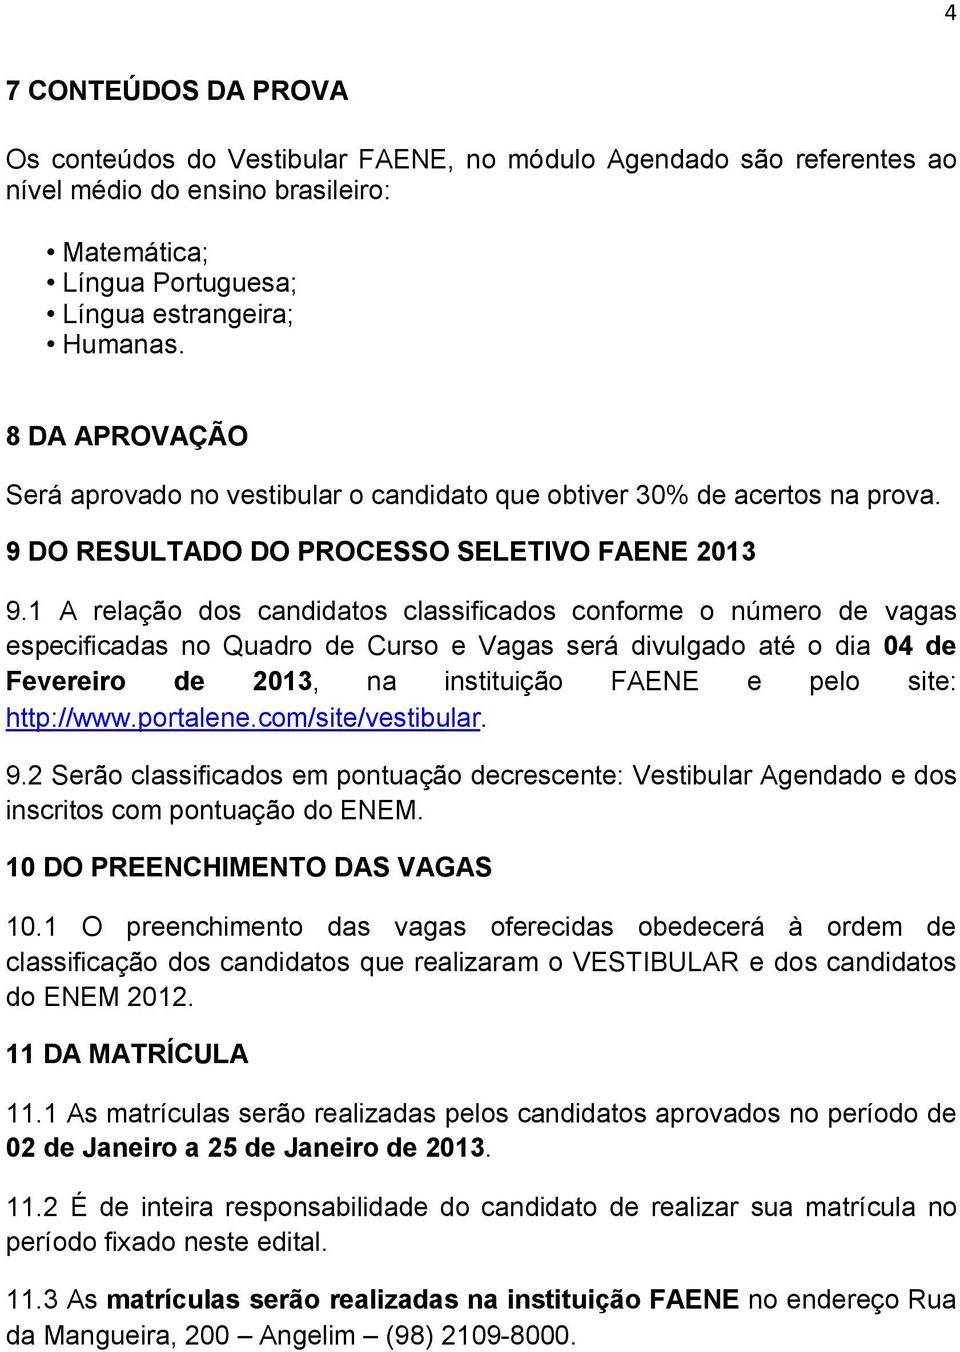 1 A relação dos candidatos classificados conforme o número de vagas especificadas no Quadro de Curso e Vagas será divulgado até o dia 04 de Fevereiro de 2013, na instituição FAENE e pelo site: